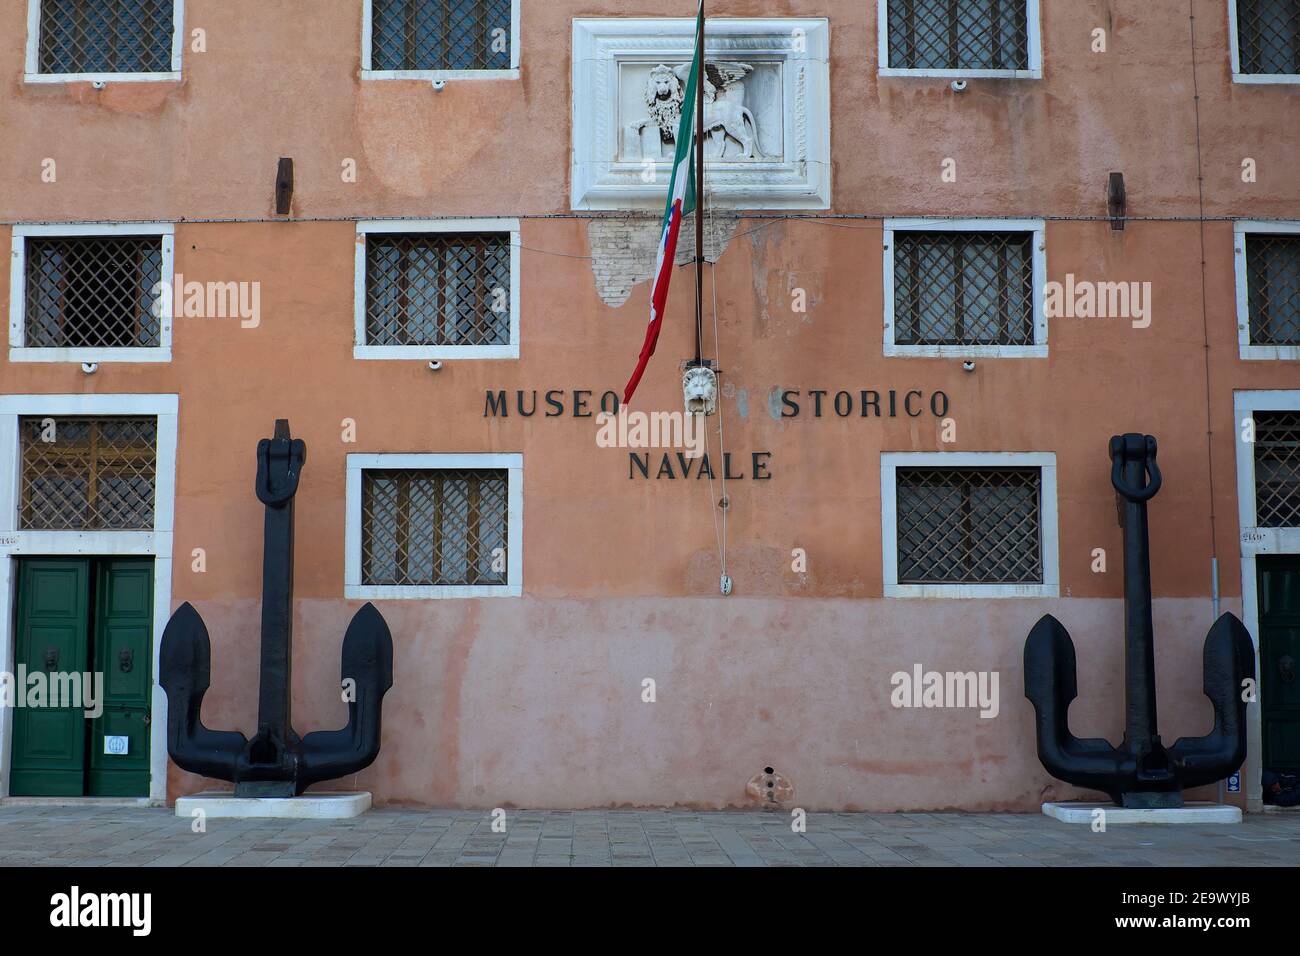 Museo Storico Navale Im Bezirk Castello In Der Nähe Des Arsenale In Venedig Italien Stockfoto